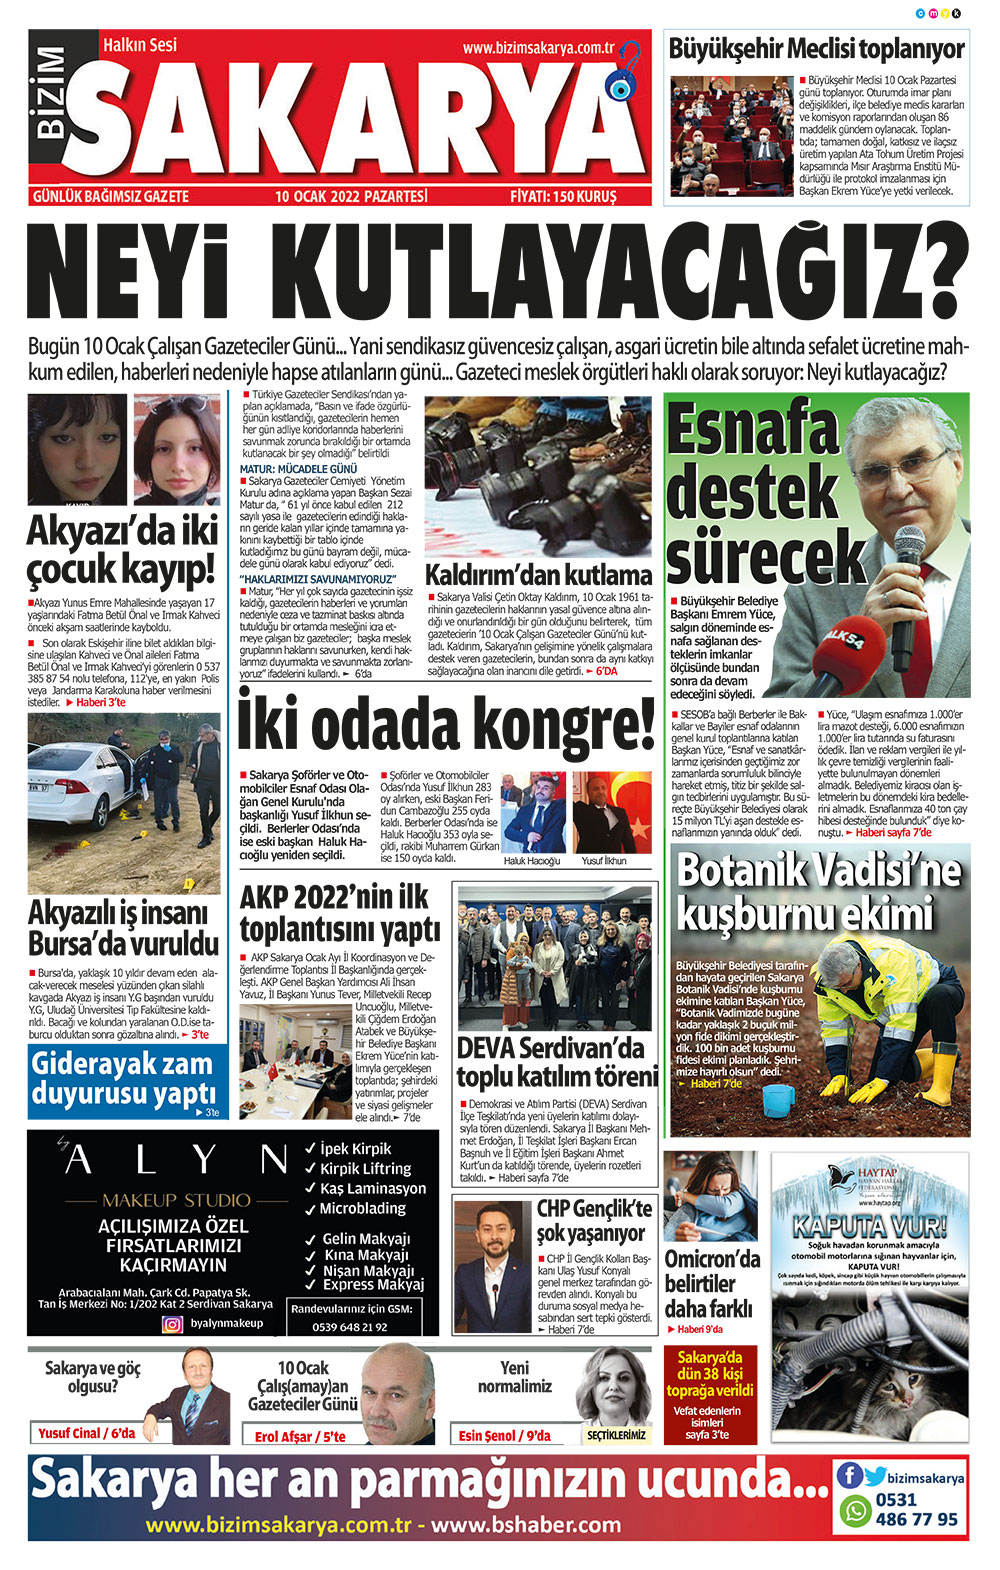 Bizim Sakarya Gazetesi - 10.01.2022 Manşeti